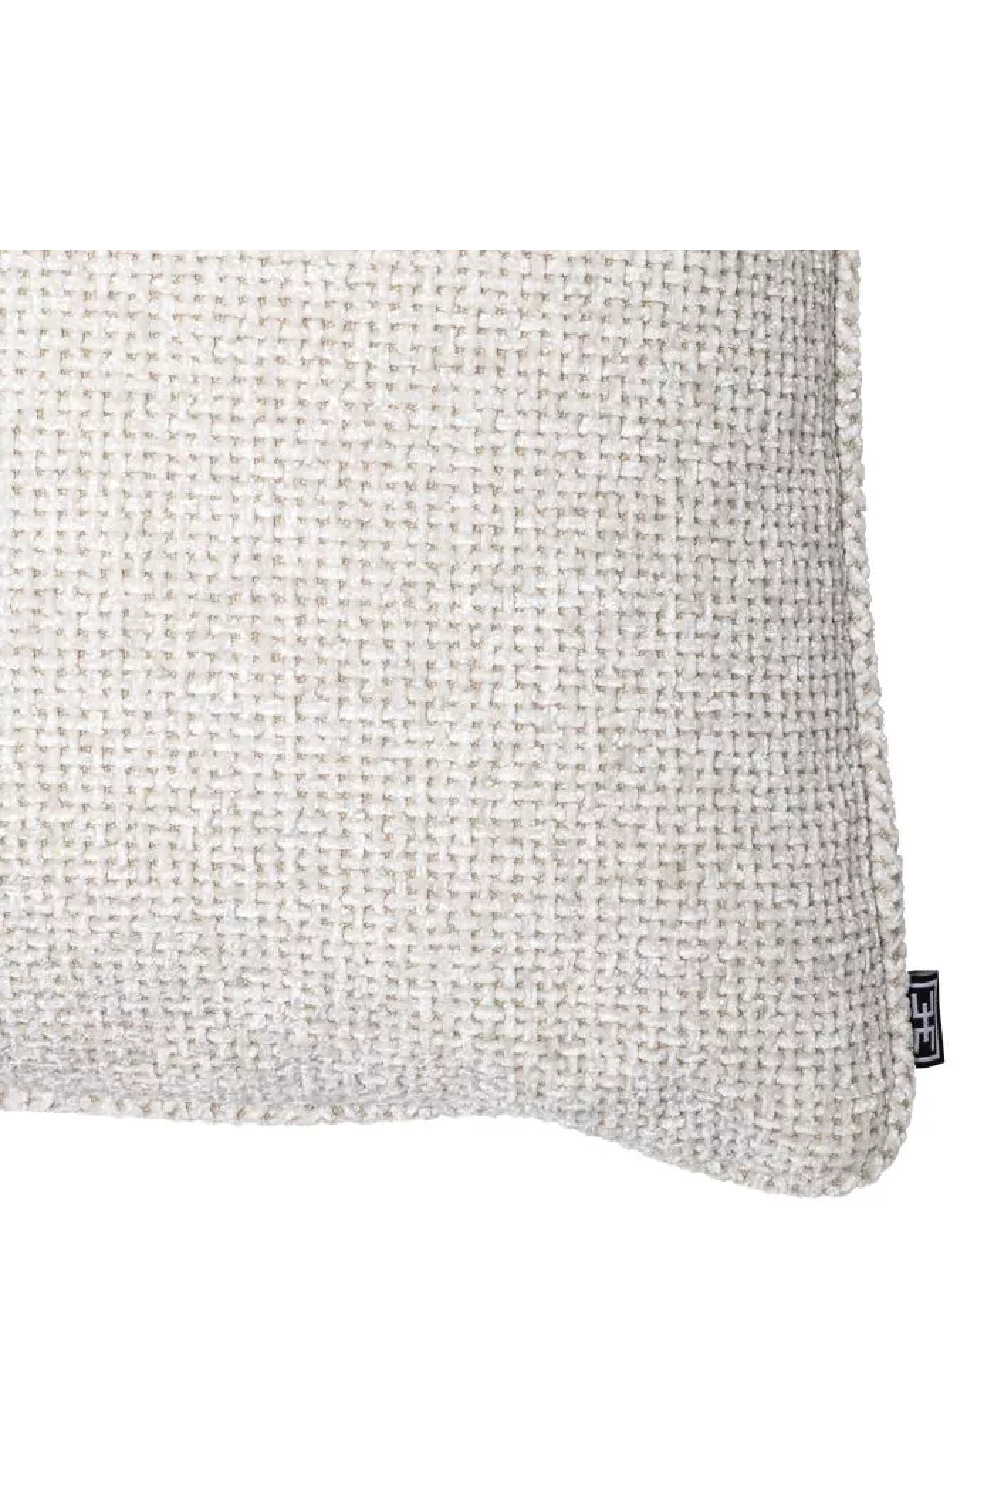 White Modern Throw Pillow | Eichholtz Lyssa | Oroa.com